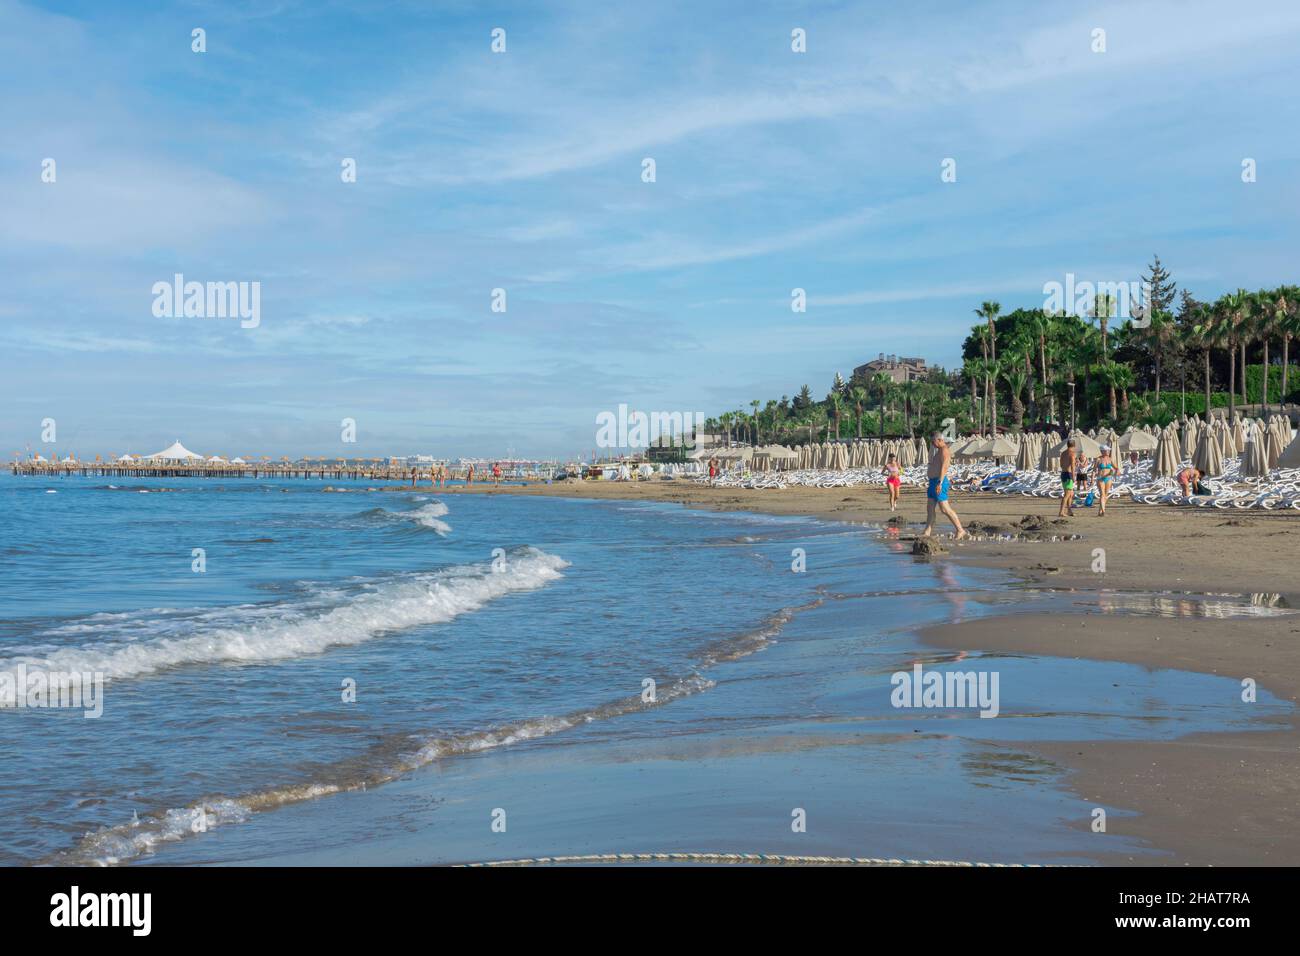 Blick auf den Strand, Liegestühle, Sonnenschirme, Flaggen und kleine wellige Küste in Antalya Seite. Selektiver Fokus. Stockfoto